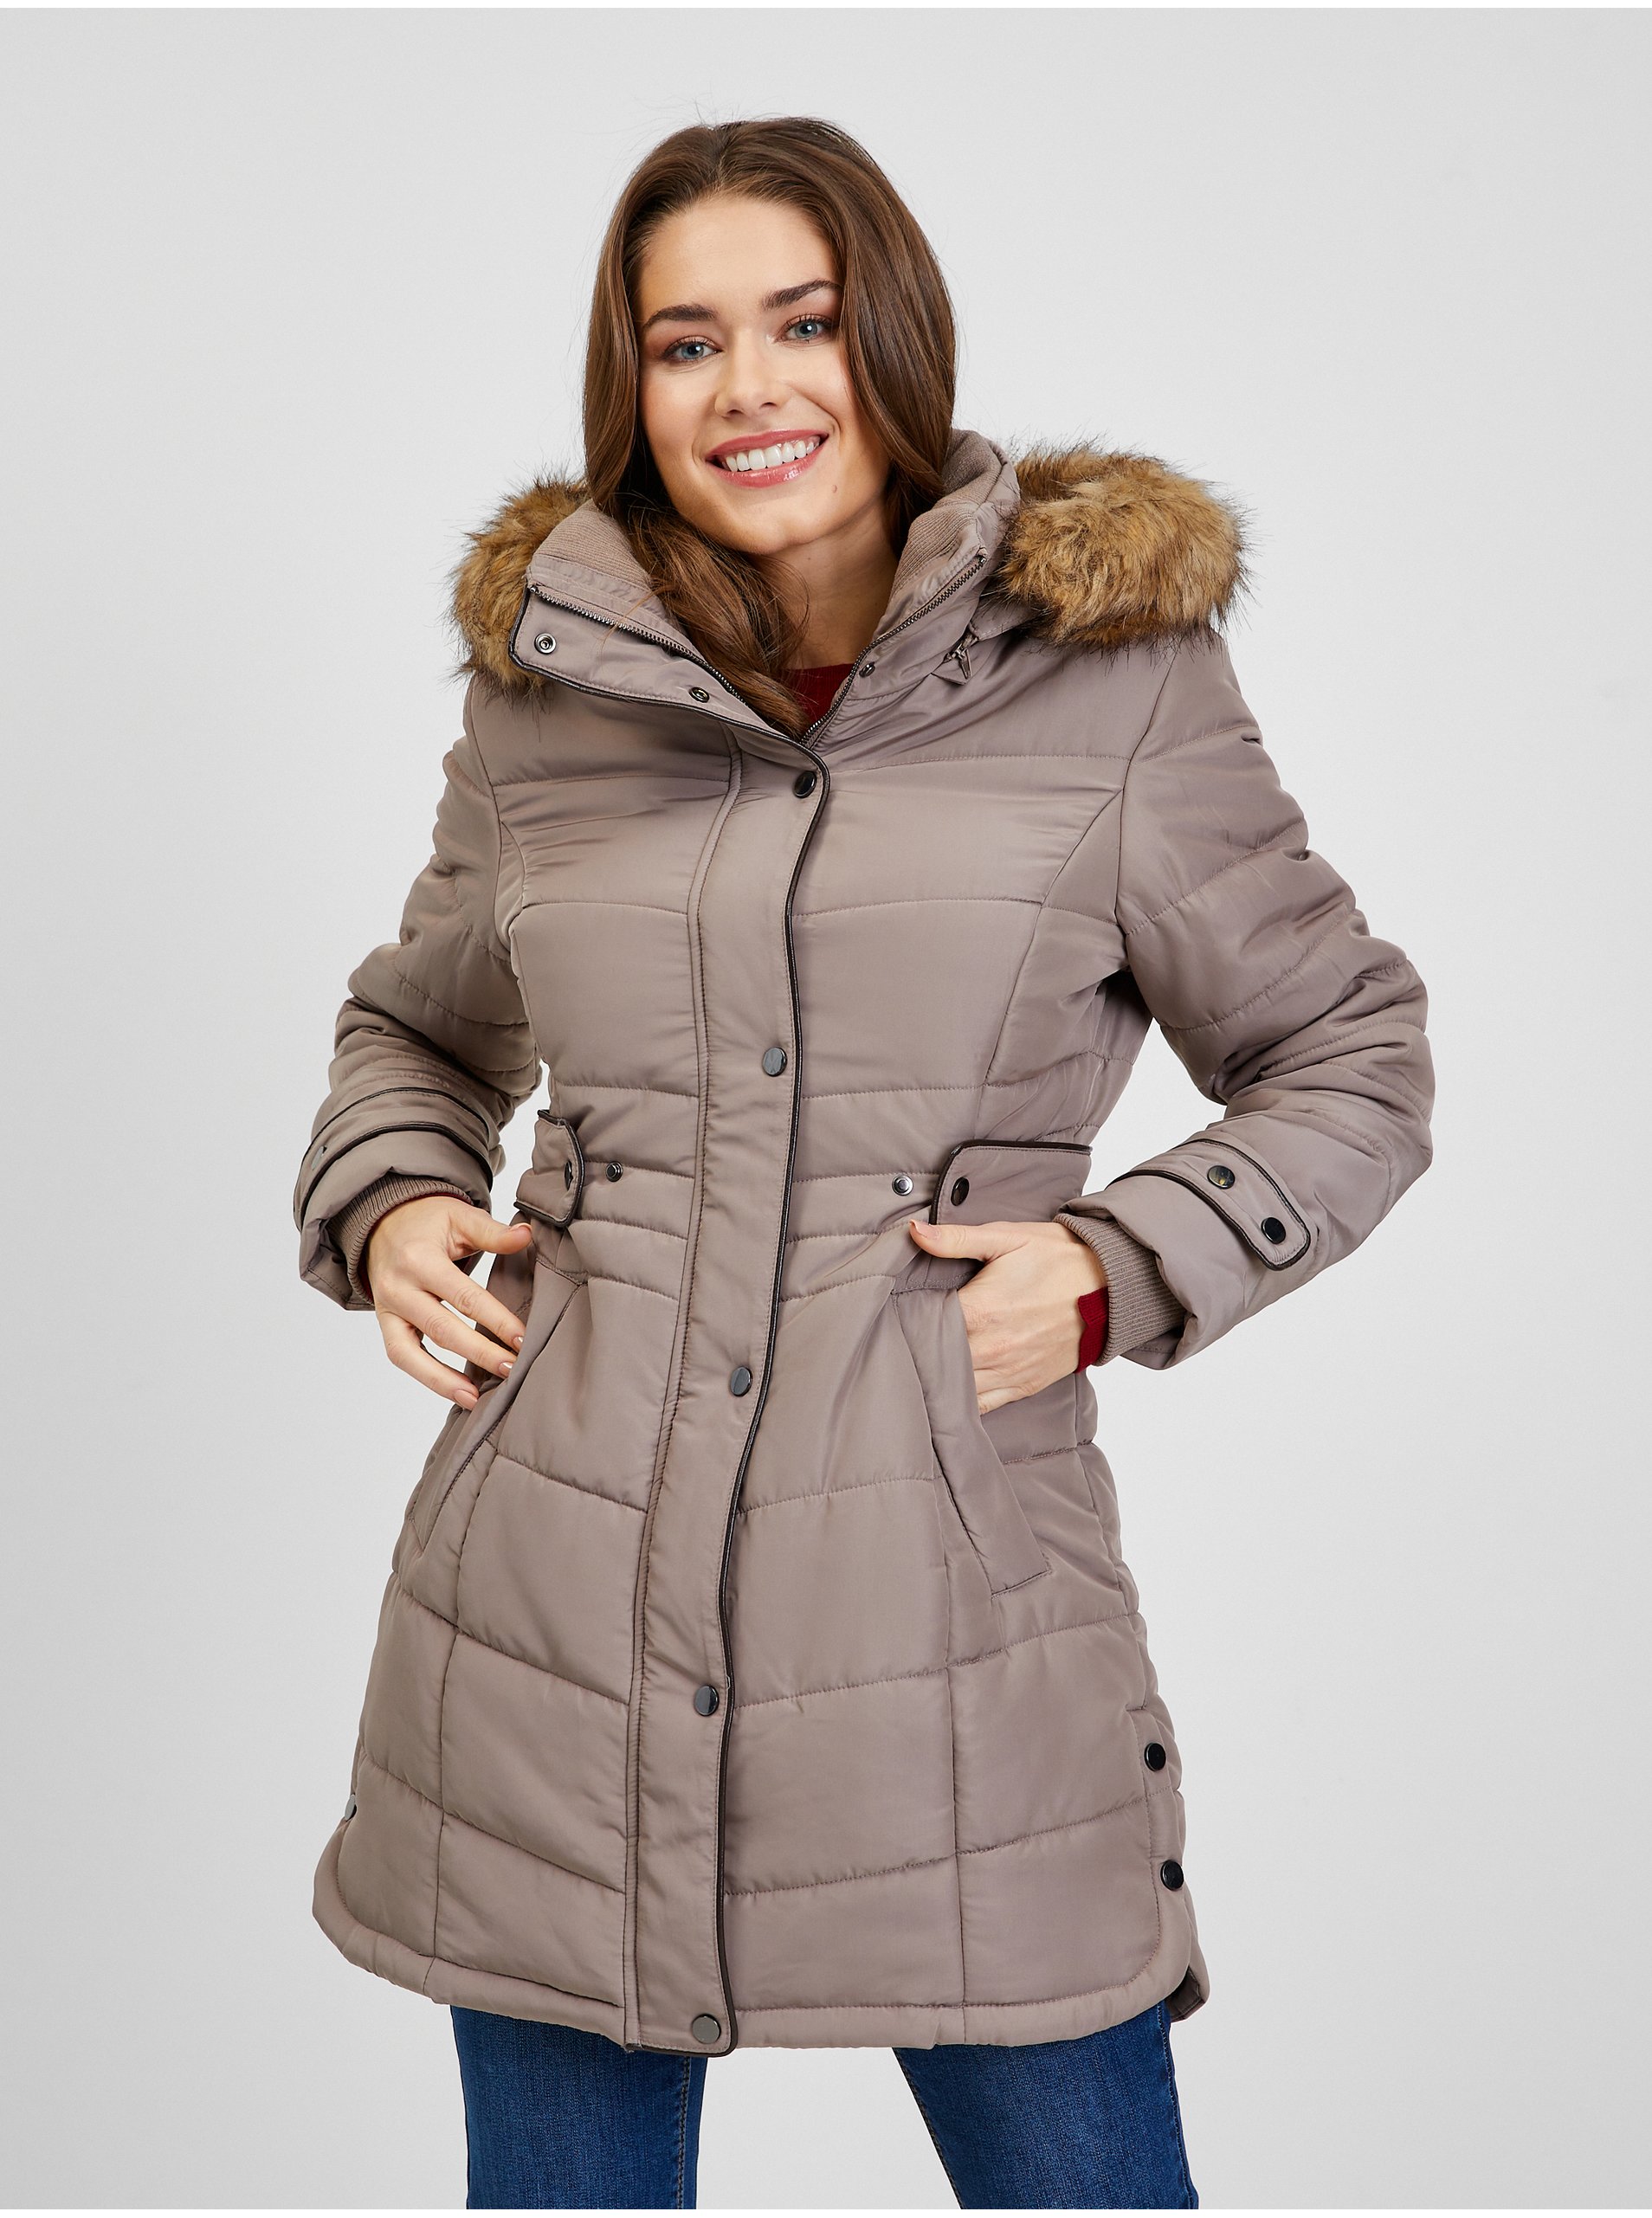 E-shop Hnědý dámský prošívaný zimní kabát s odepínací kapucí s kožíškem ORSAY